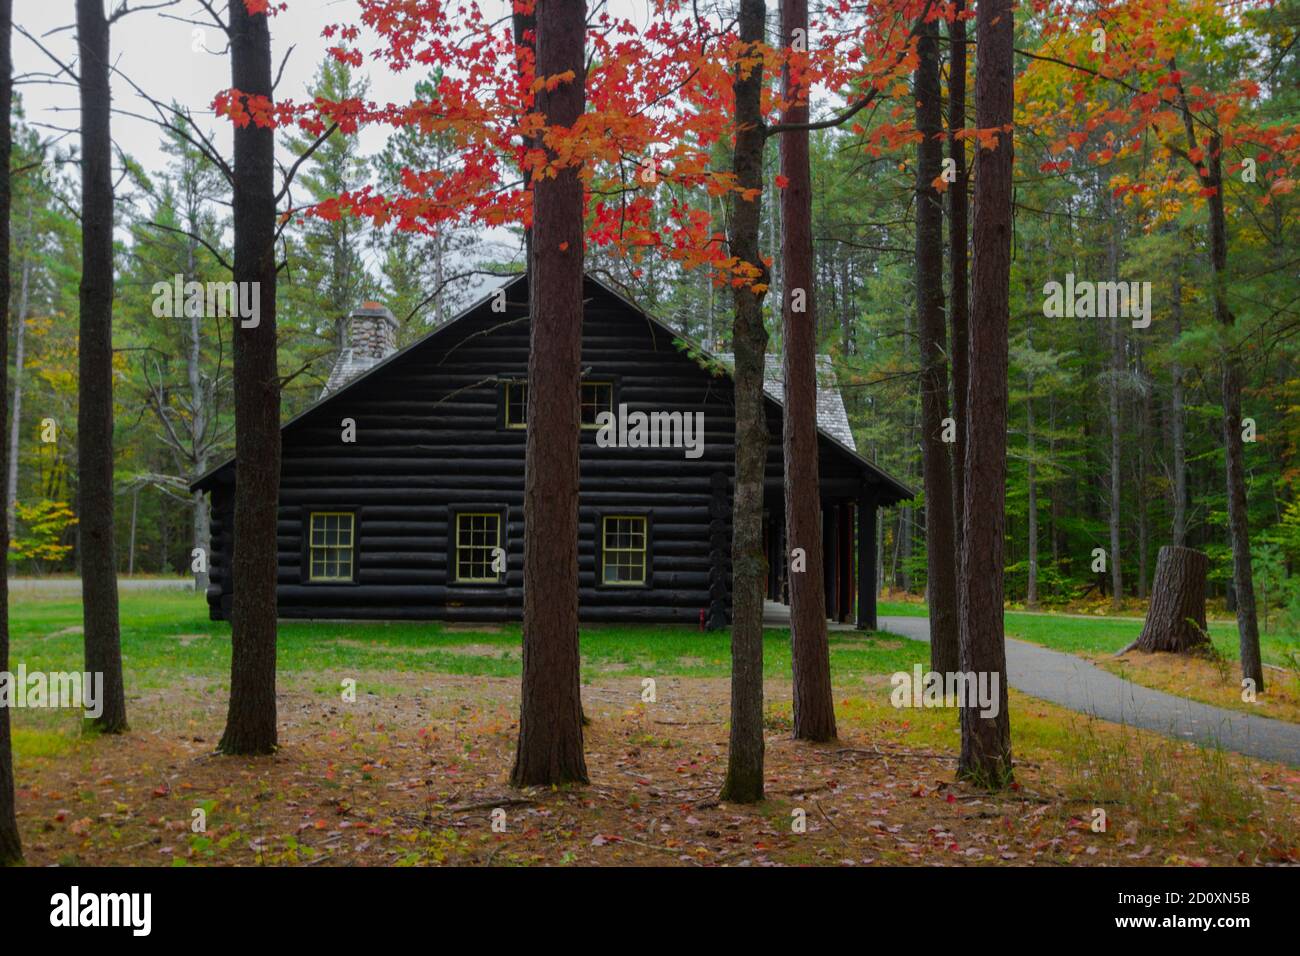 Cabaña de madera en el bosque. Tradicional cabaña de madera en un bosque remoto enmarcado por el follaje otoñal. Esta es una estructura histórica ubicada dentro de un parque estatal Foto de stock